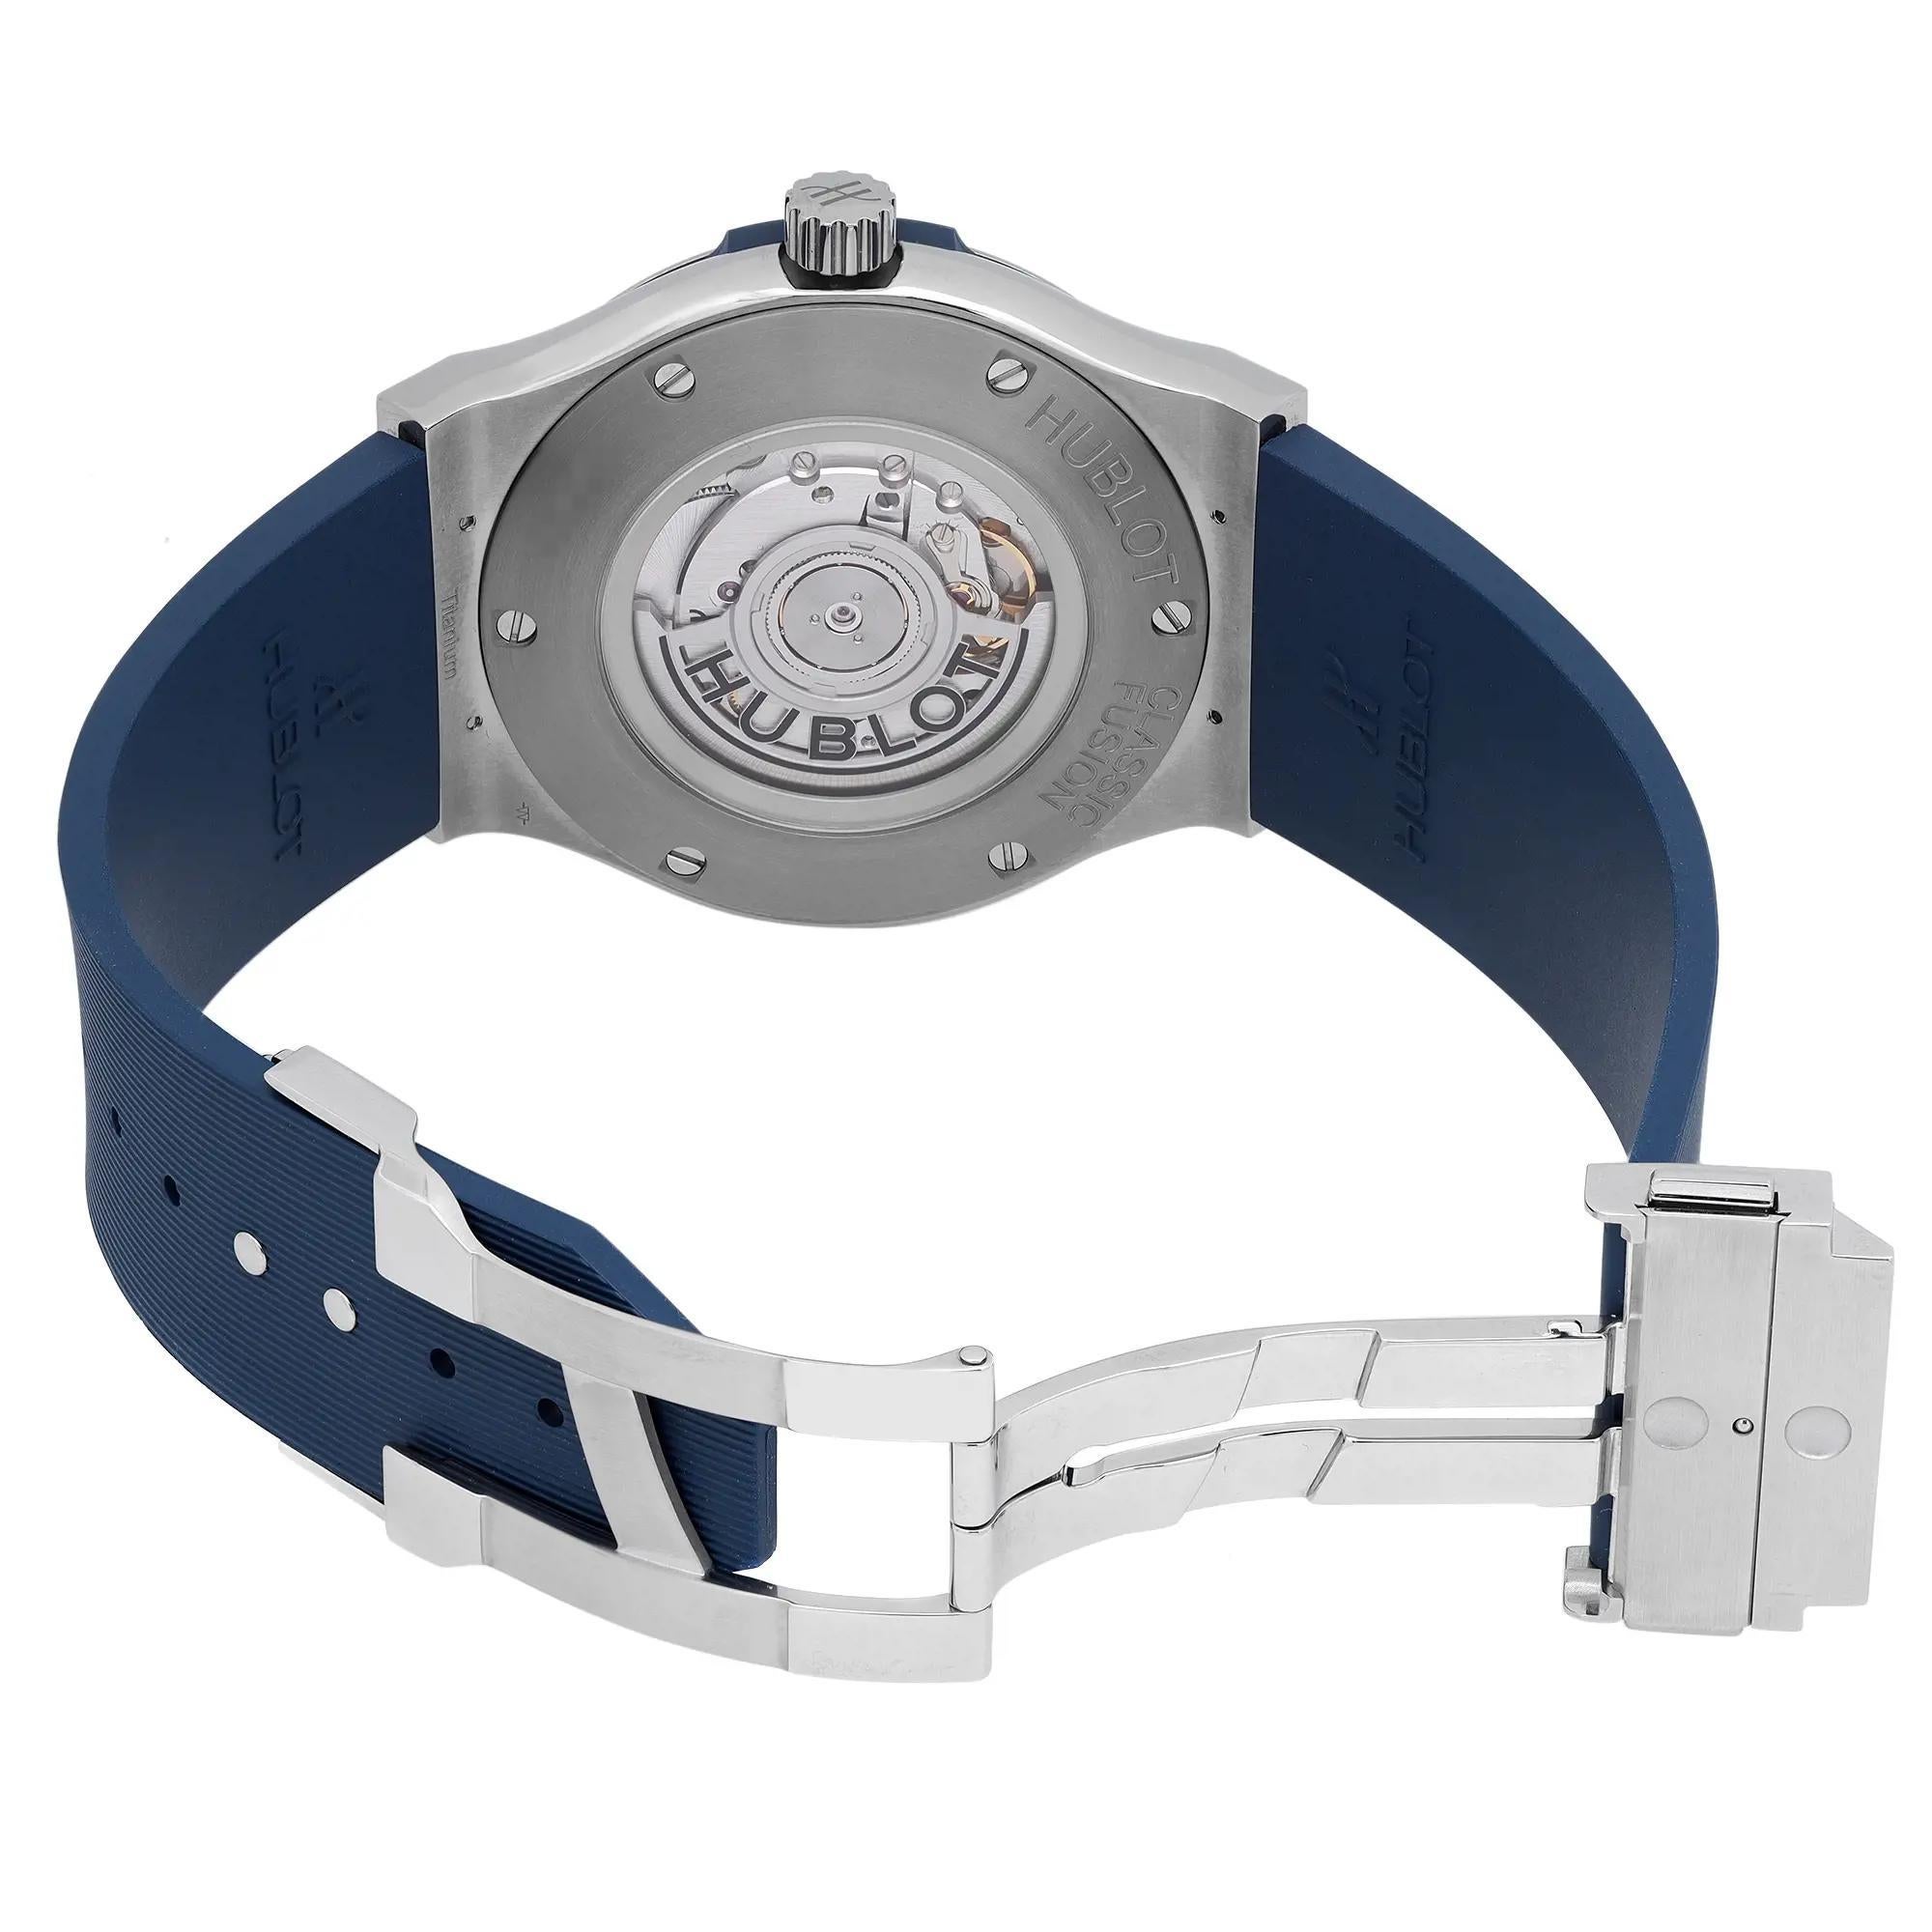 hublot blue watch